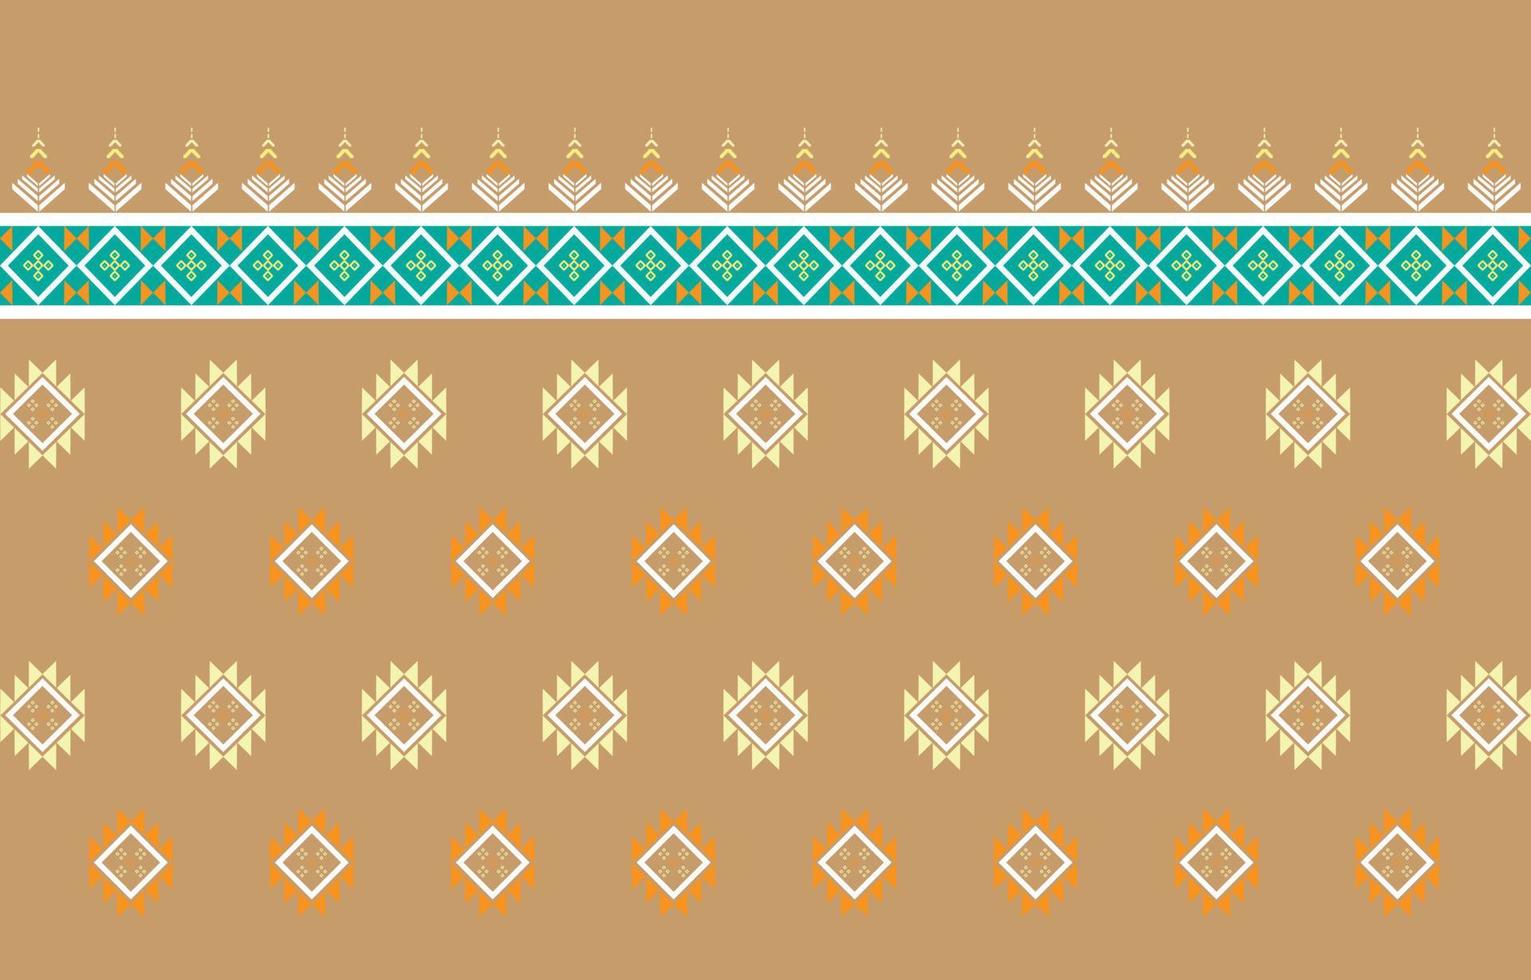 conception traditionnelle de motif oriental ethnique géométrique pour les vêtements, le tissu, le livre et le plan. motifs géométriques et tribaux abstraits, motifs géométriques de tissu local de conception d'utilisation vecteur